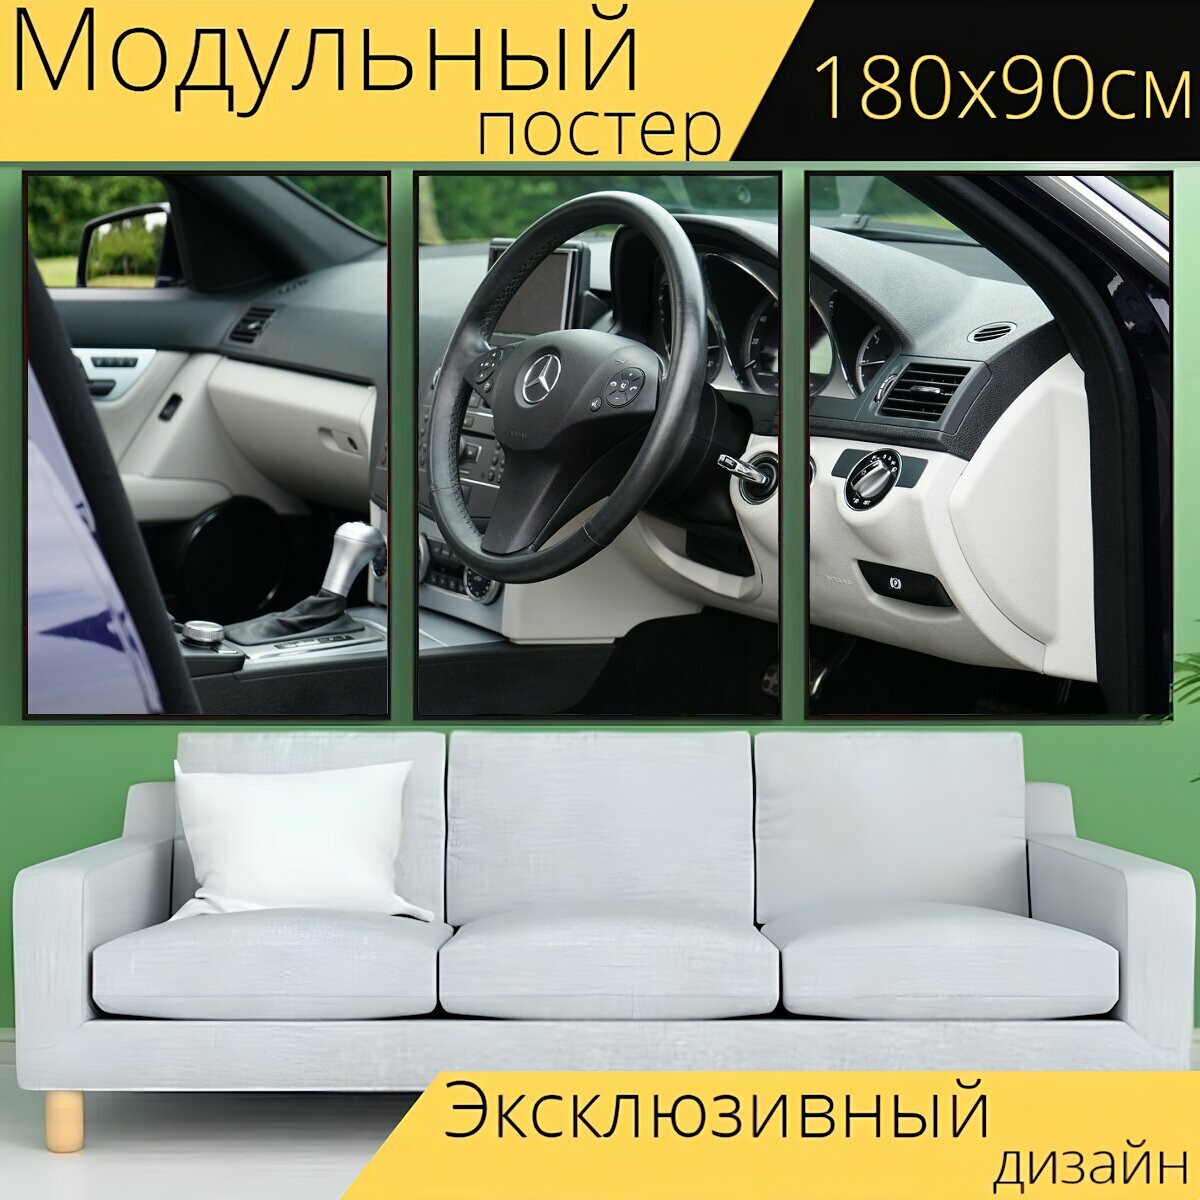 Модульный постер "Машина, рулевое колесо, рулевое управление" 180 x 90 см. для интерьера